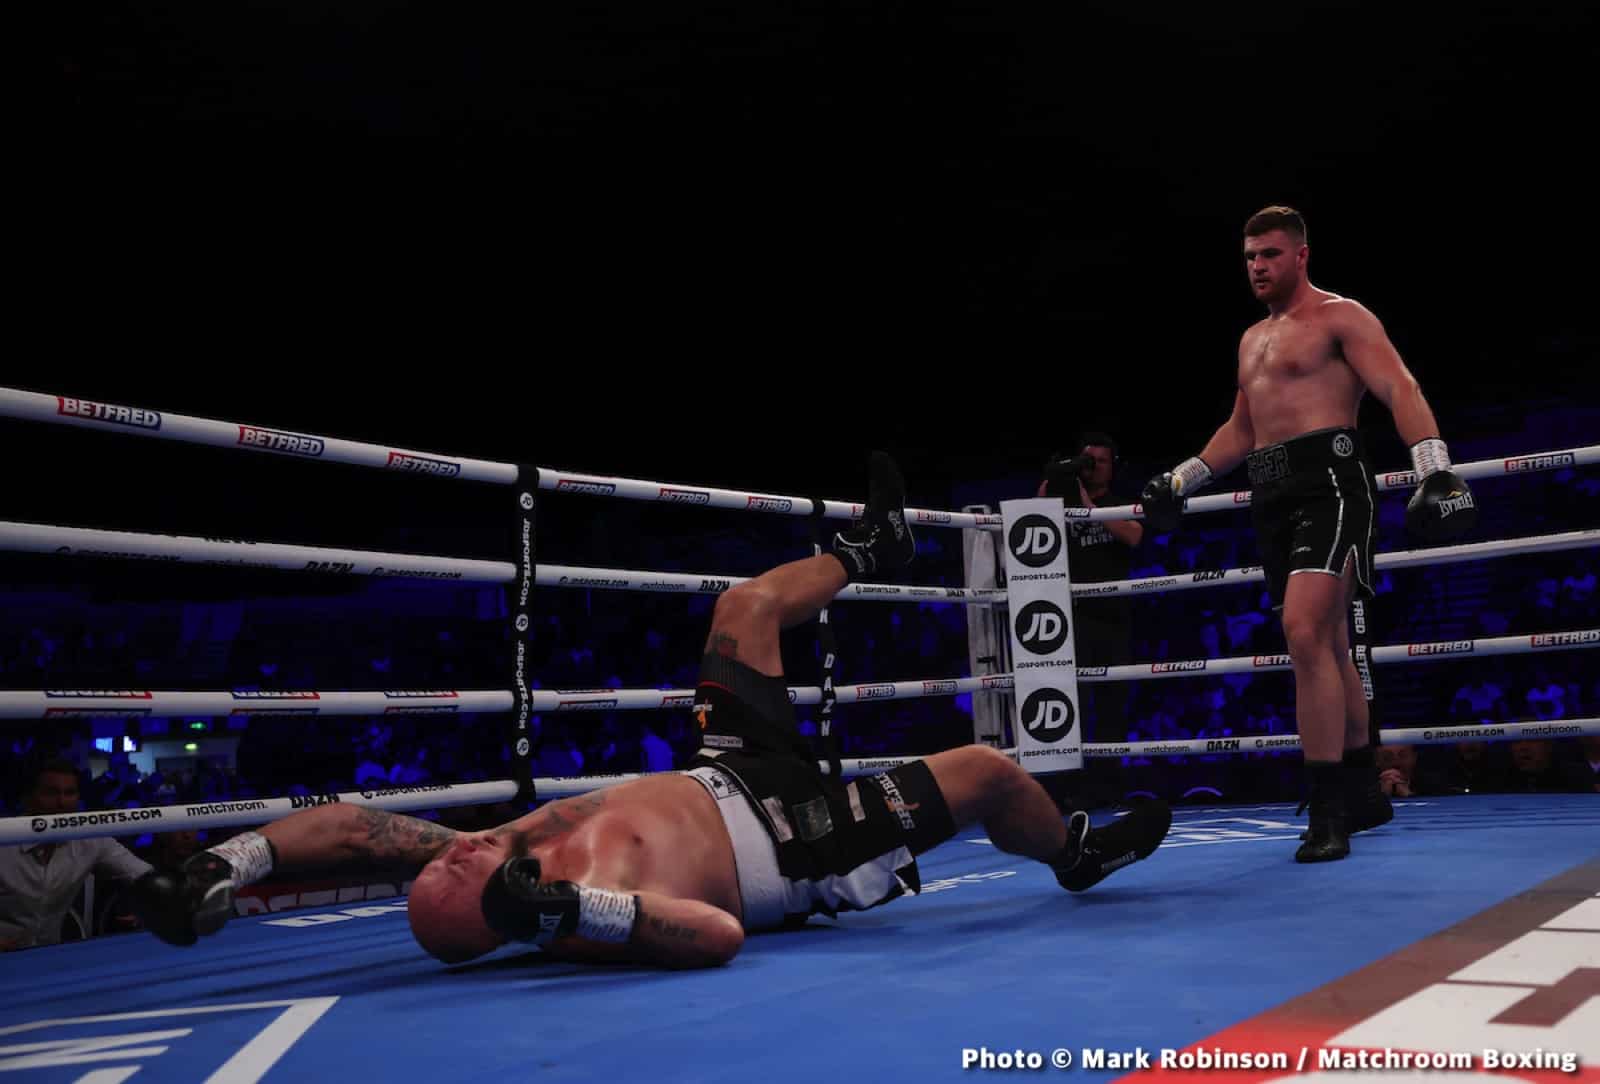 British Boxing boxing image / photo